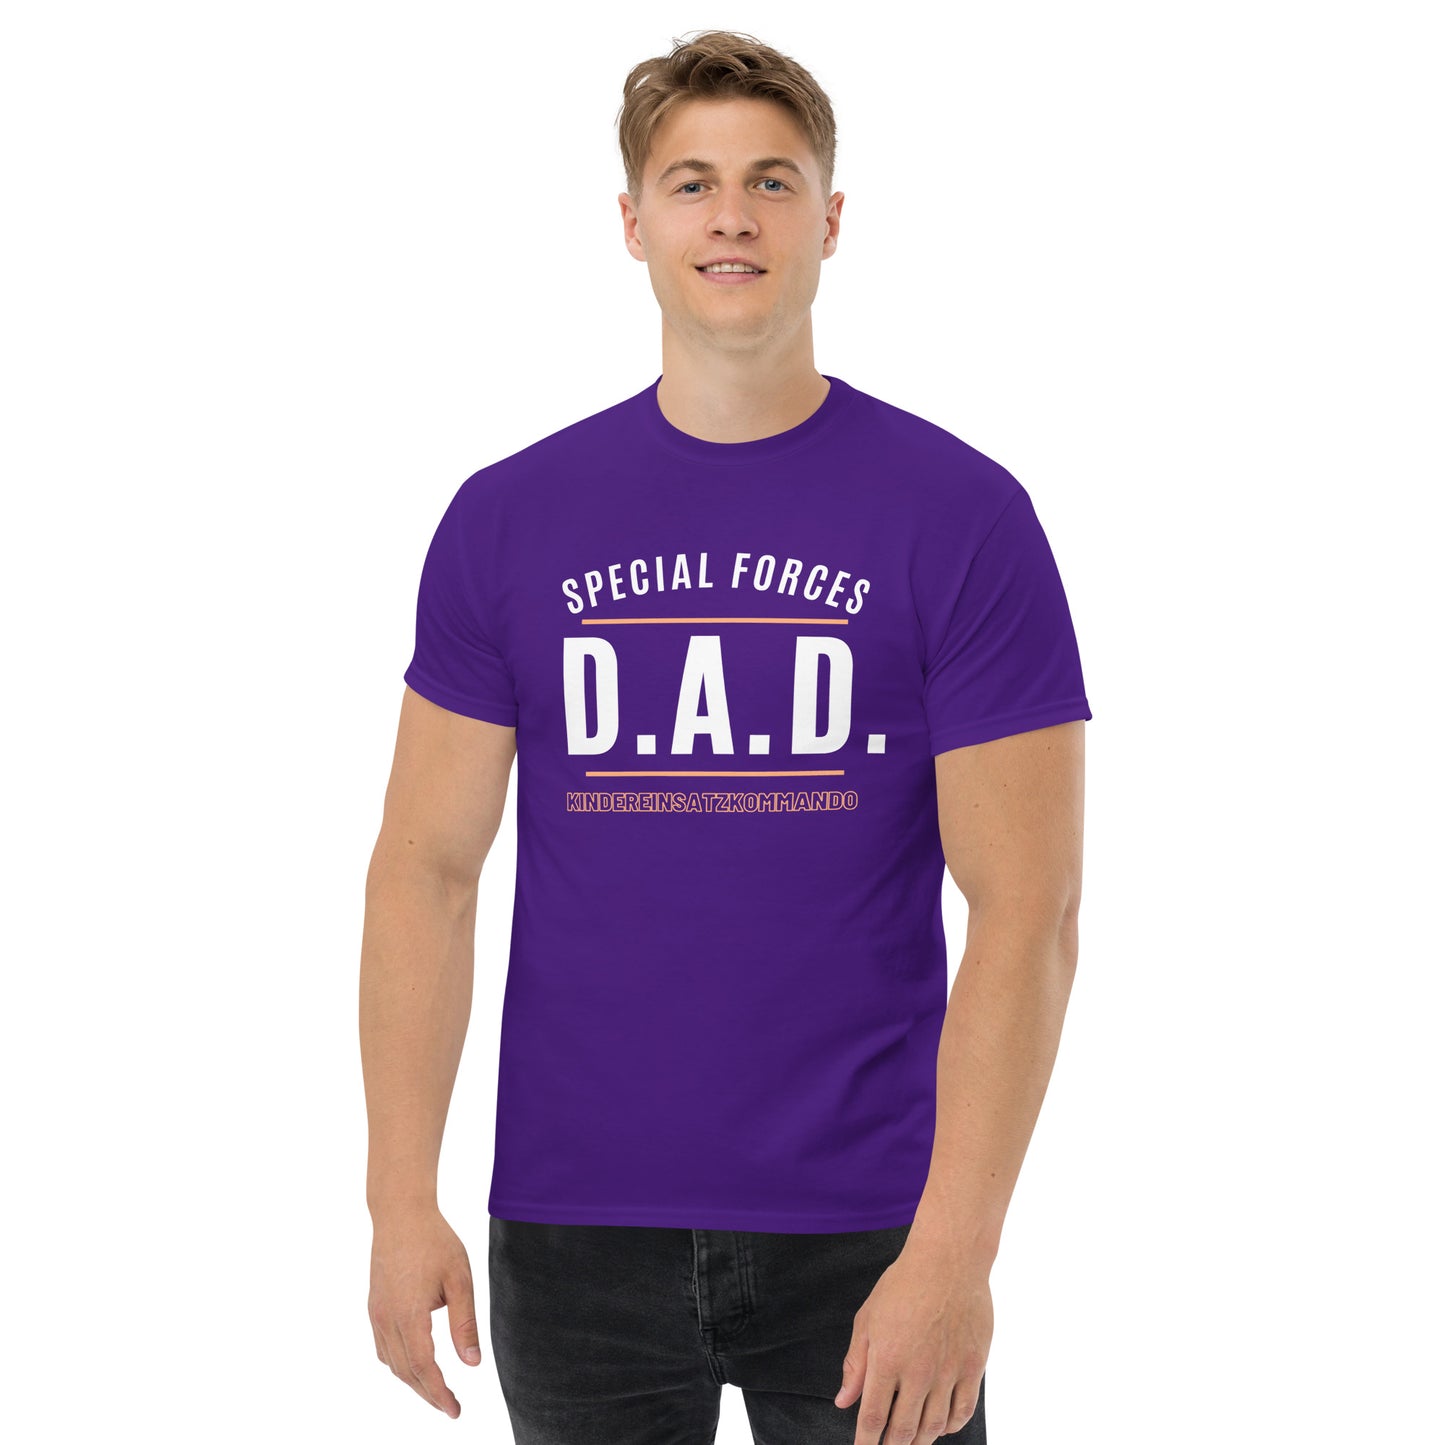 D.A.D. - Statement auf klassischem Herren-T-Shirt :-)